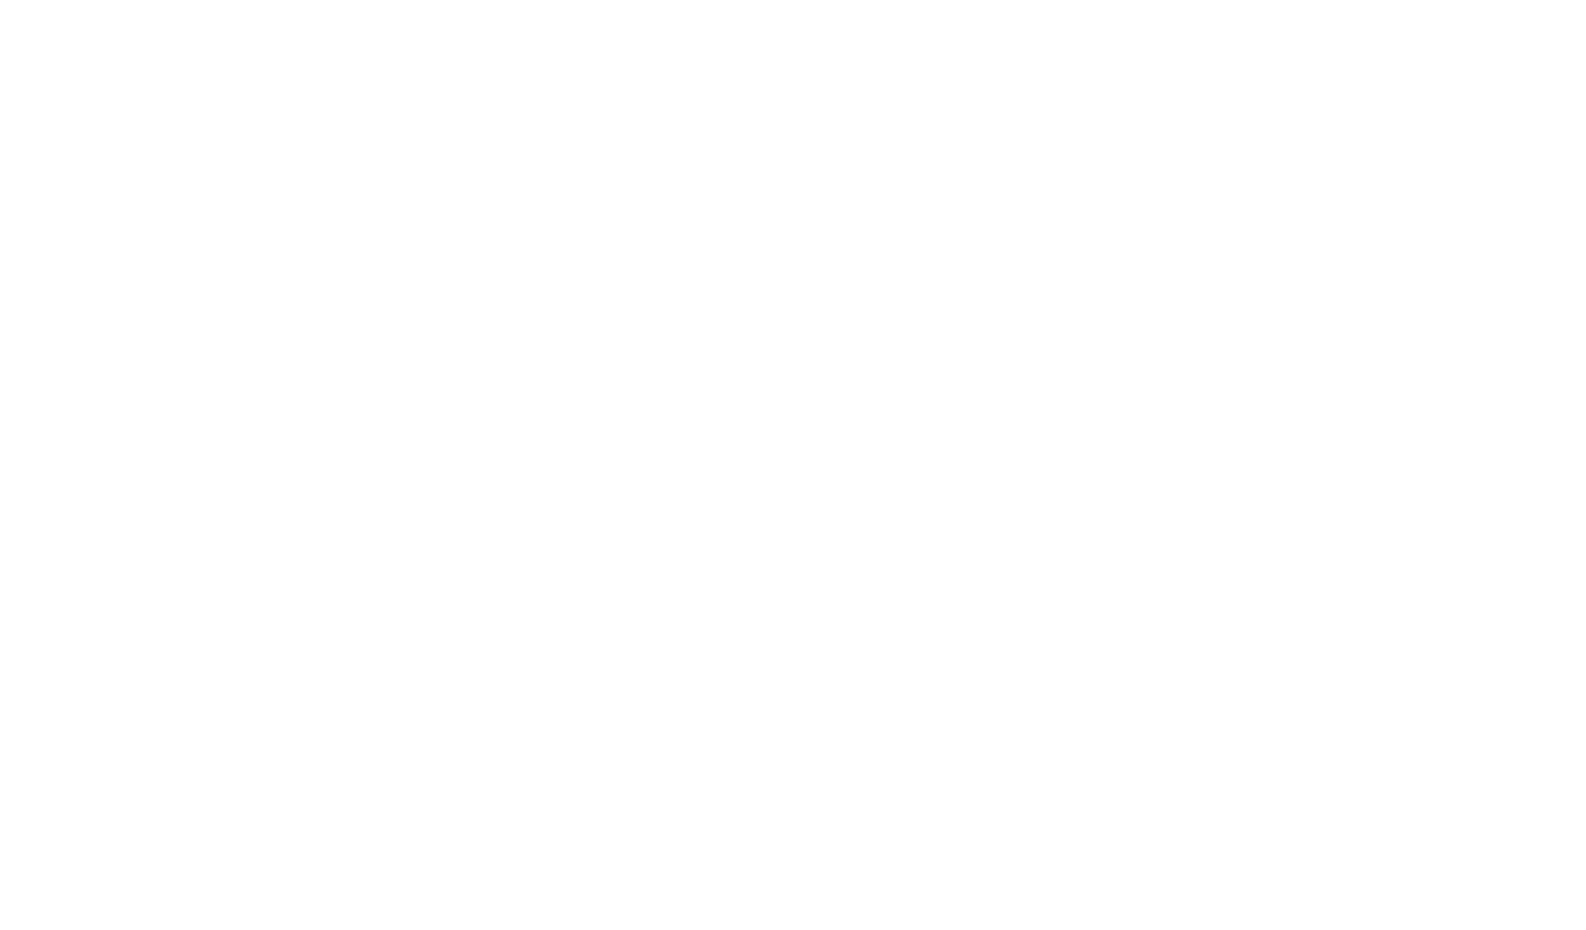 Mariott Hotels